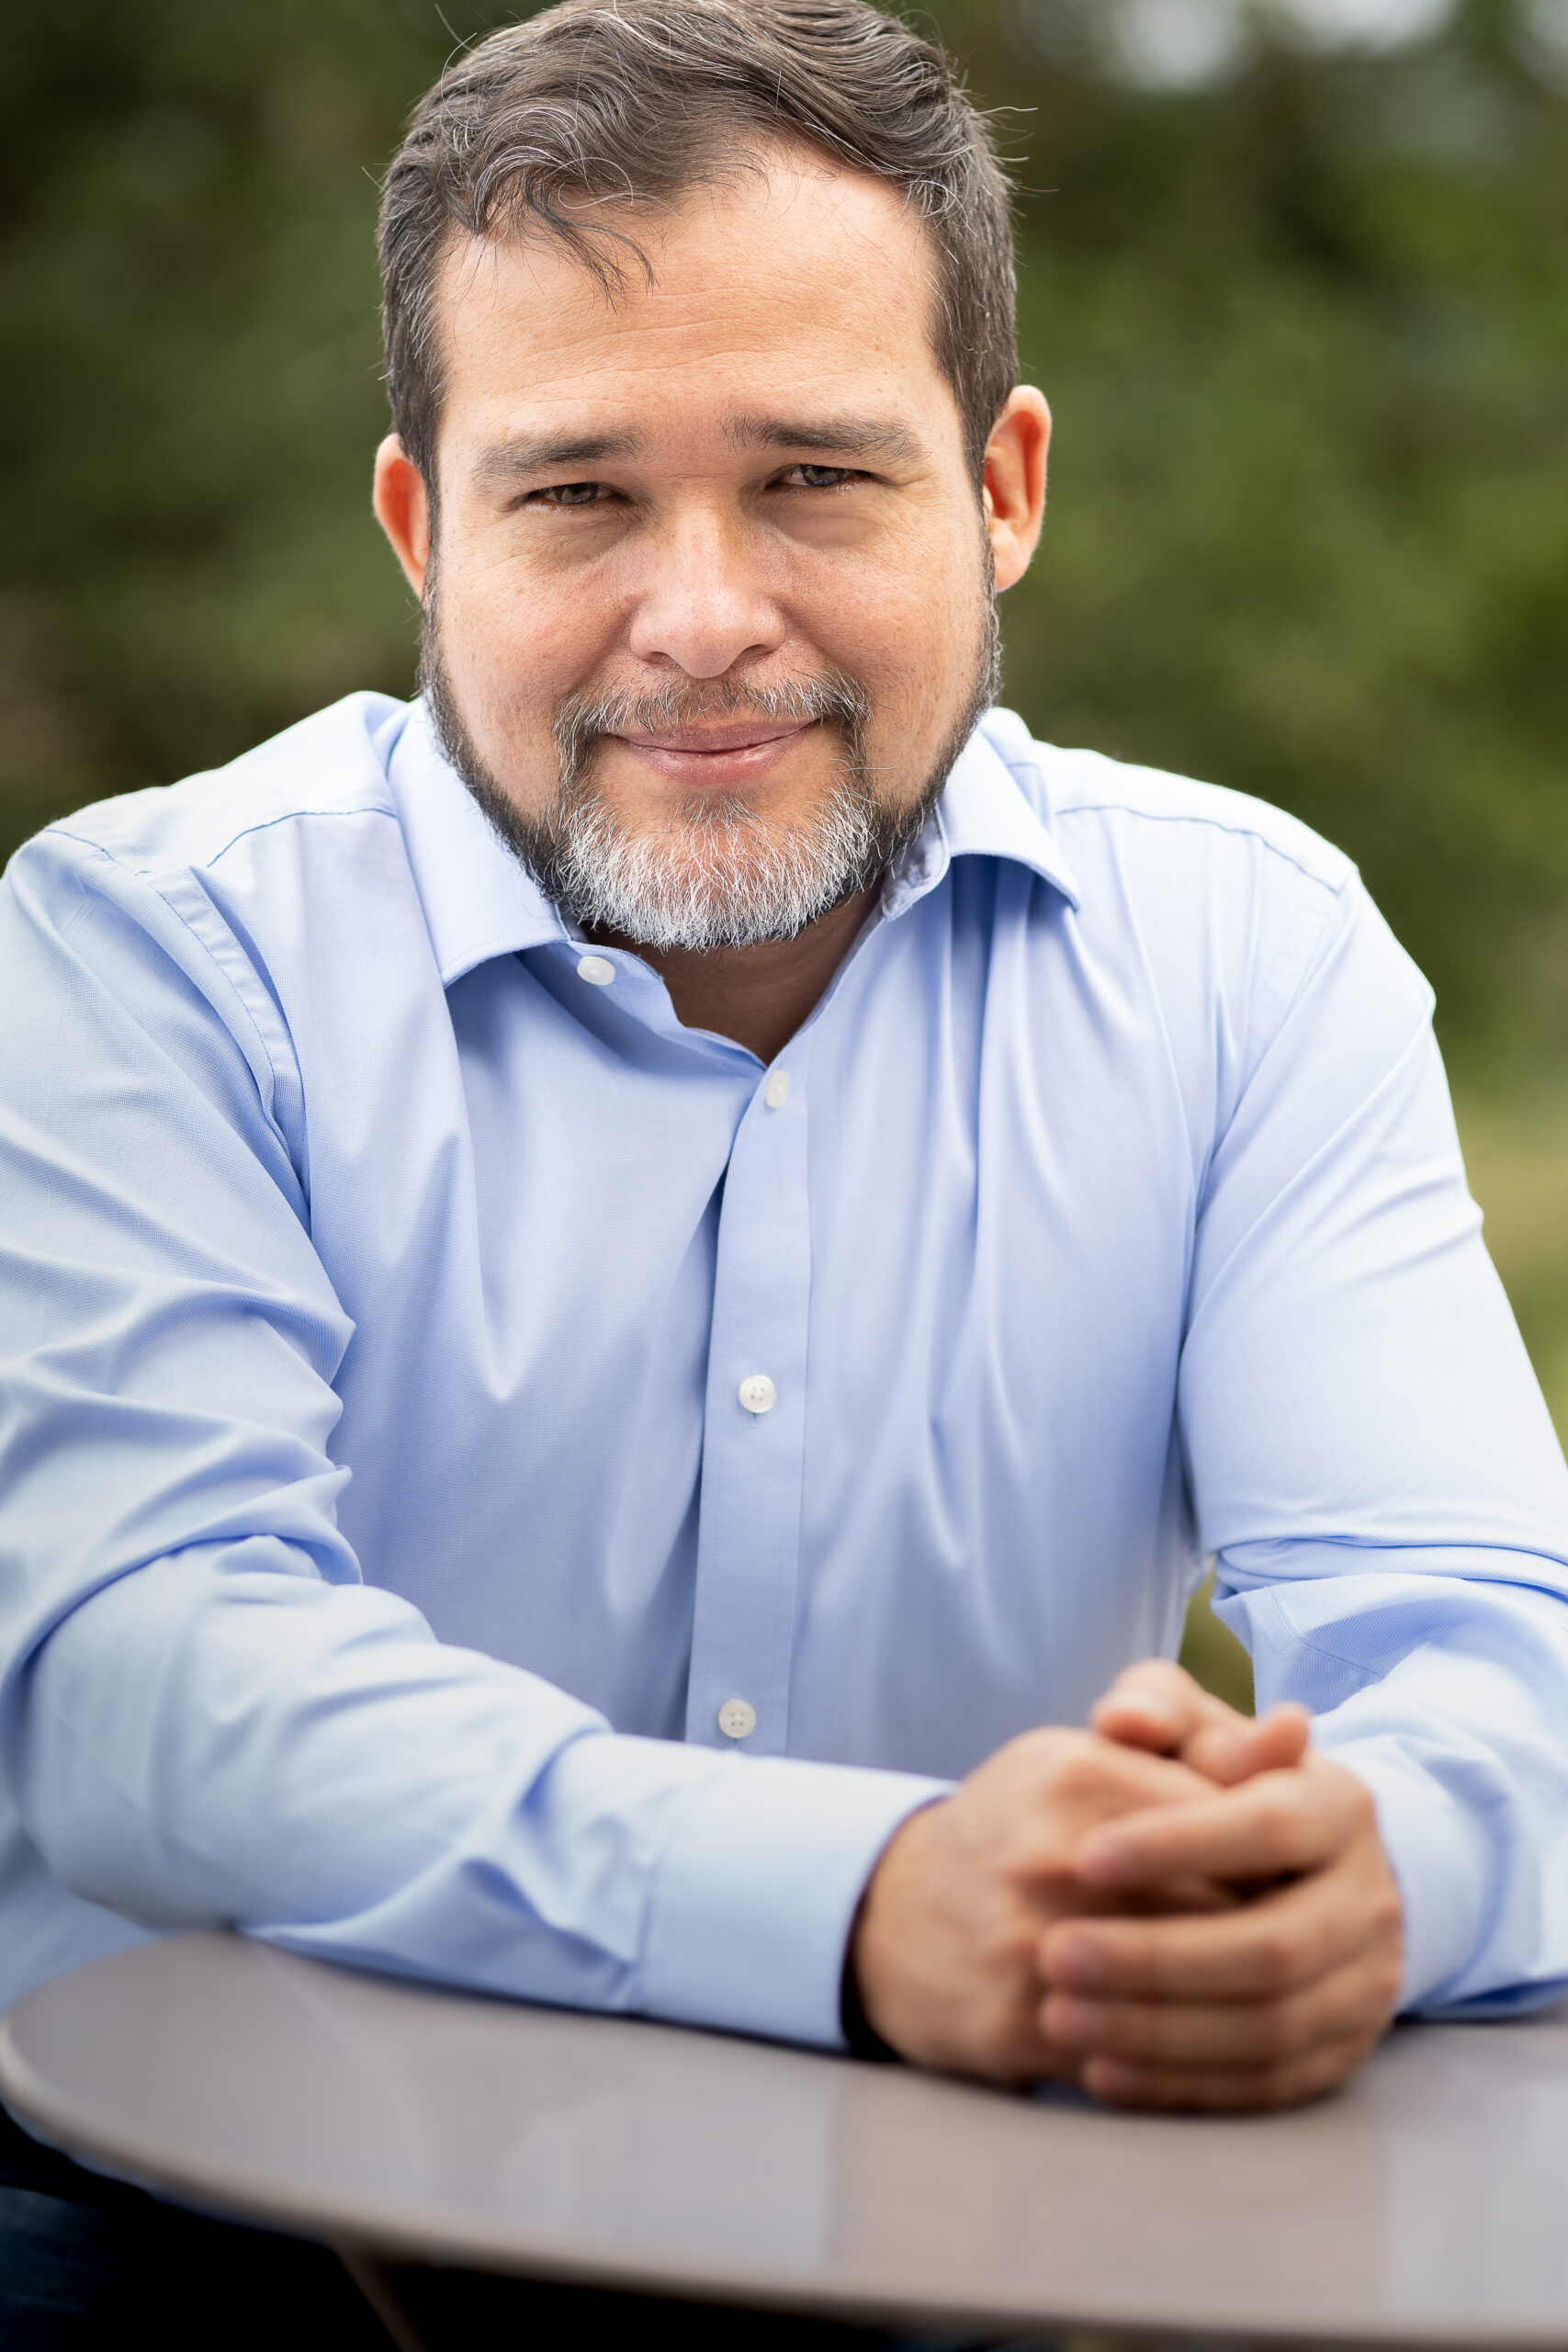 Humberto Montes – Conferencista, Facilitador, Escritor y Master